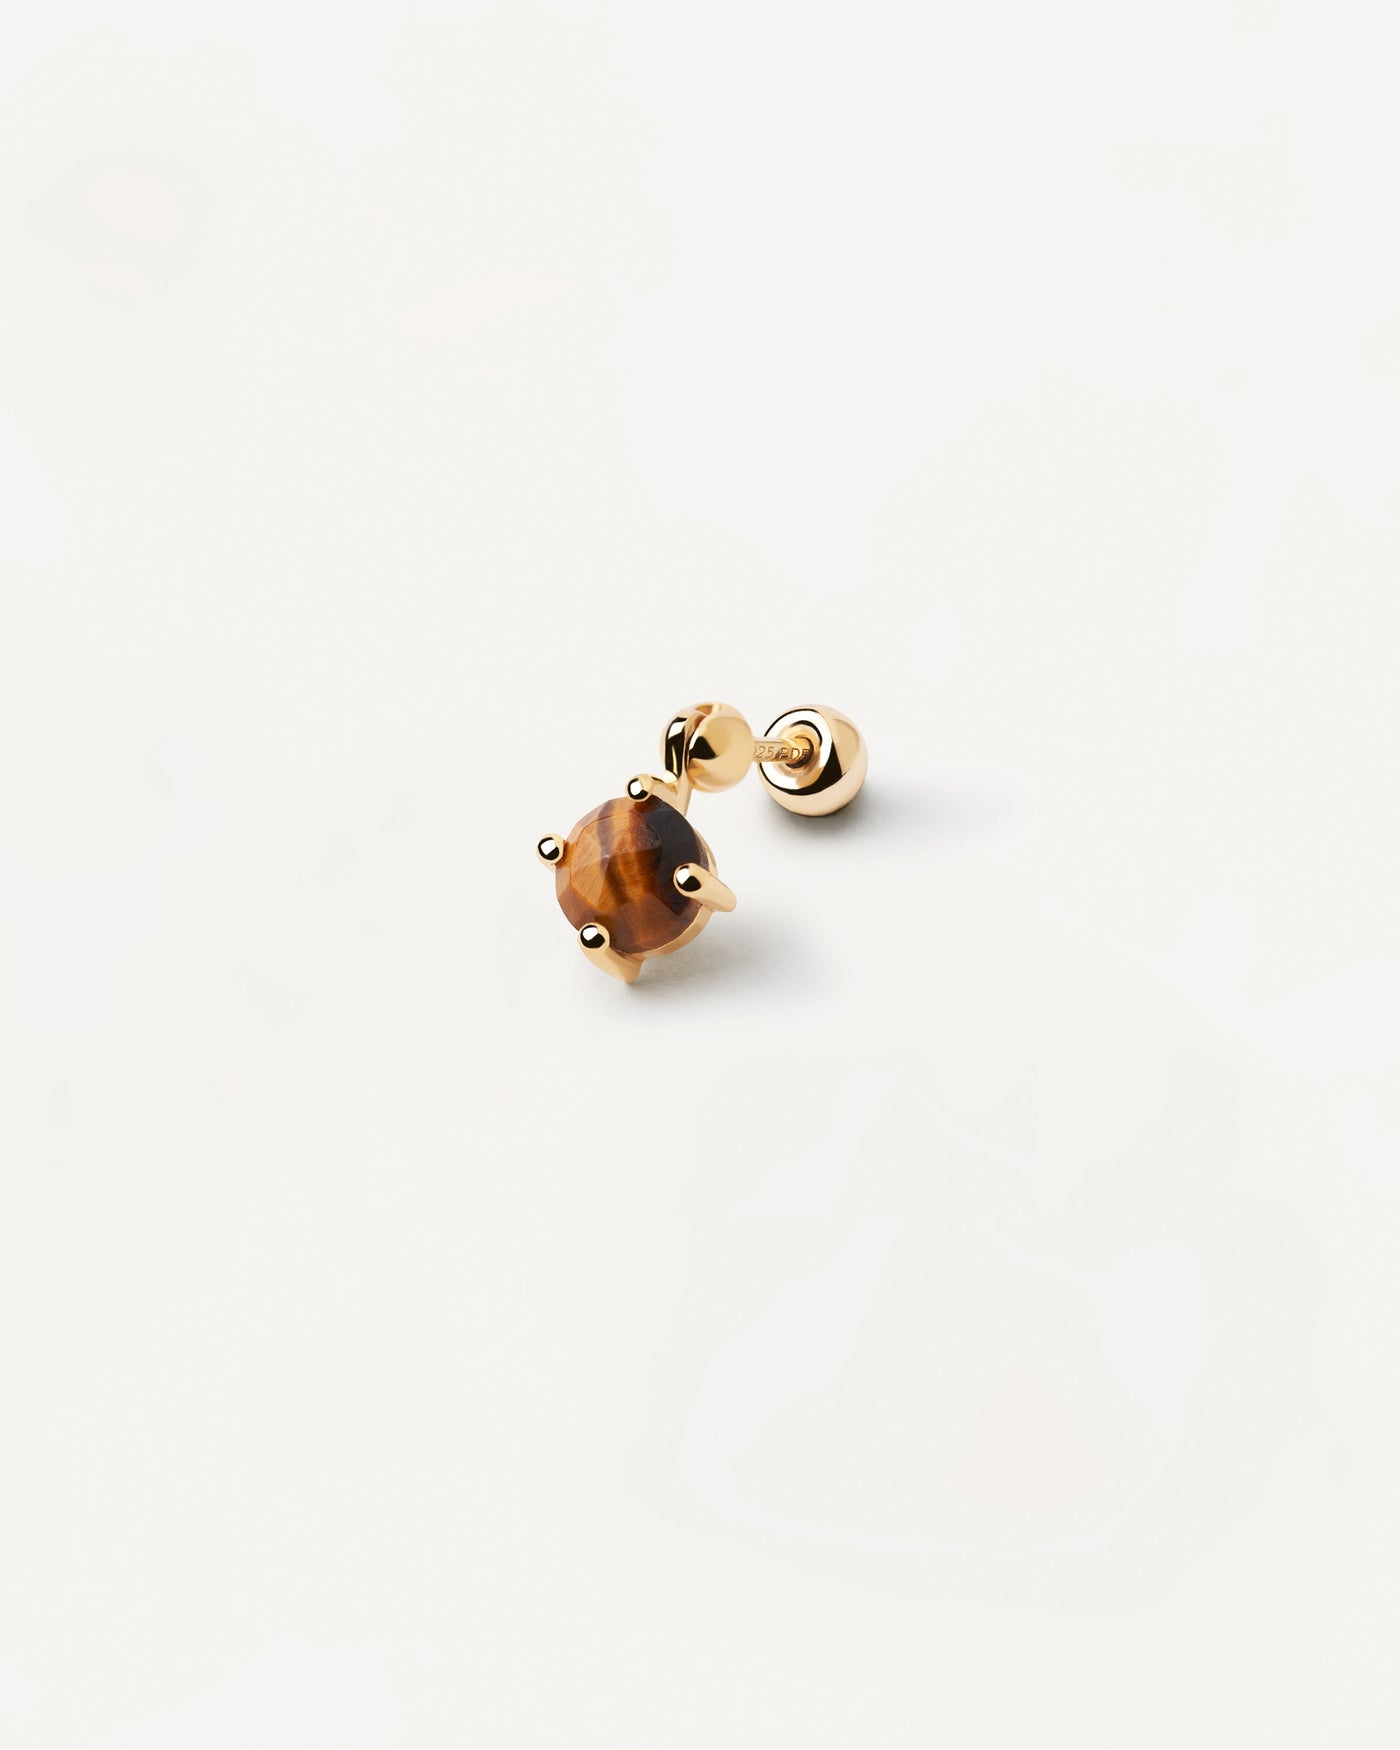 Sortiment 2023 | Kimi Tigerauge Einzelner Ohrring. Vergoldeter Piercing-Ohrring mit braunem Edelsteinanhänger im Rundschliff. Erhalten Sie die neuesten Produkte von PDPAOLA. Geben Sie Ihre Bestellung sicher auf und erhalten Sie diesen Bestseller. Kostenloser Versand.